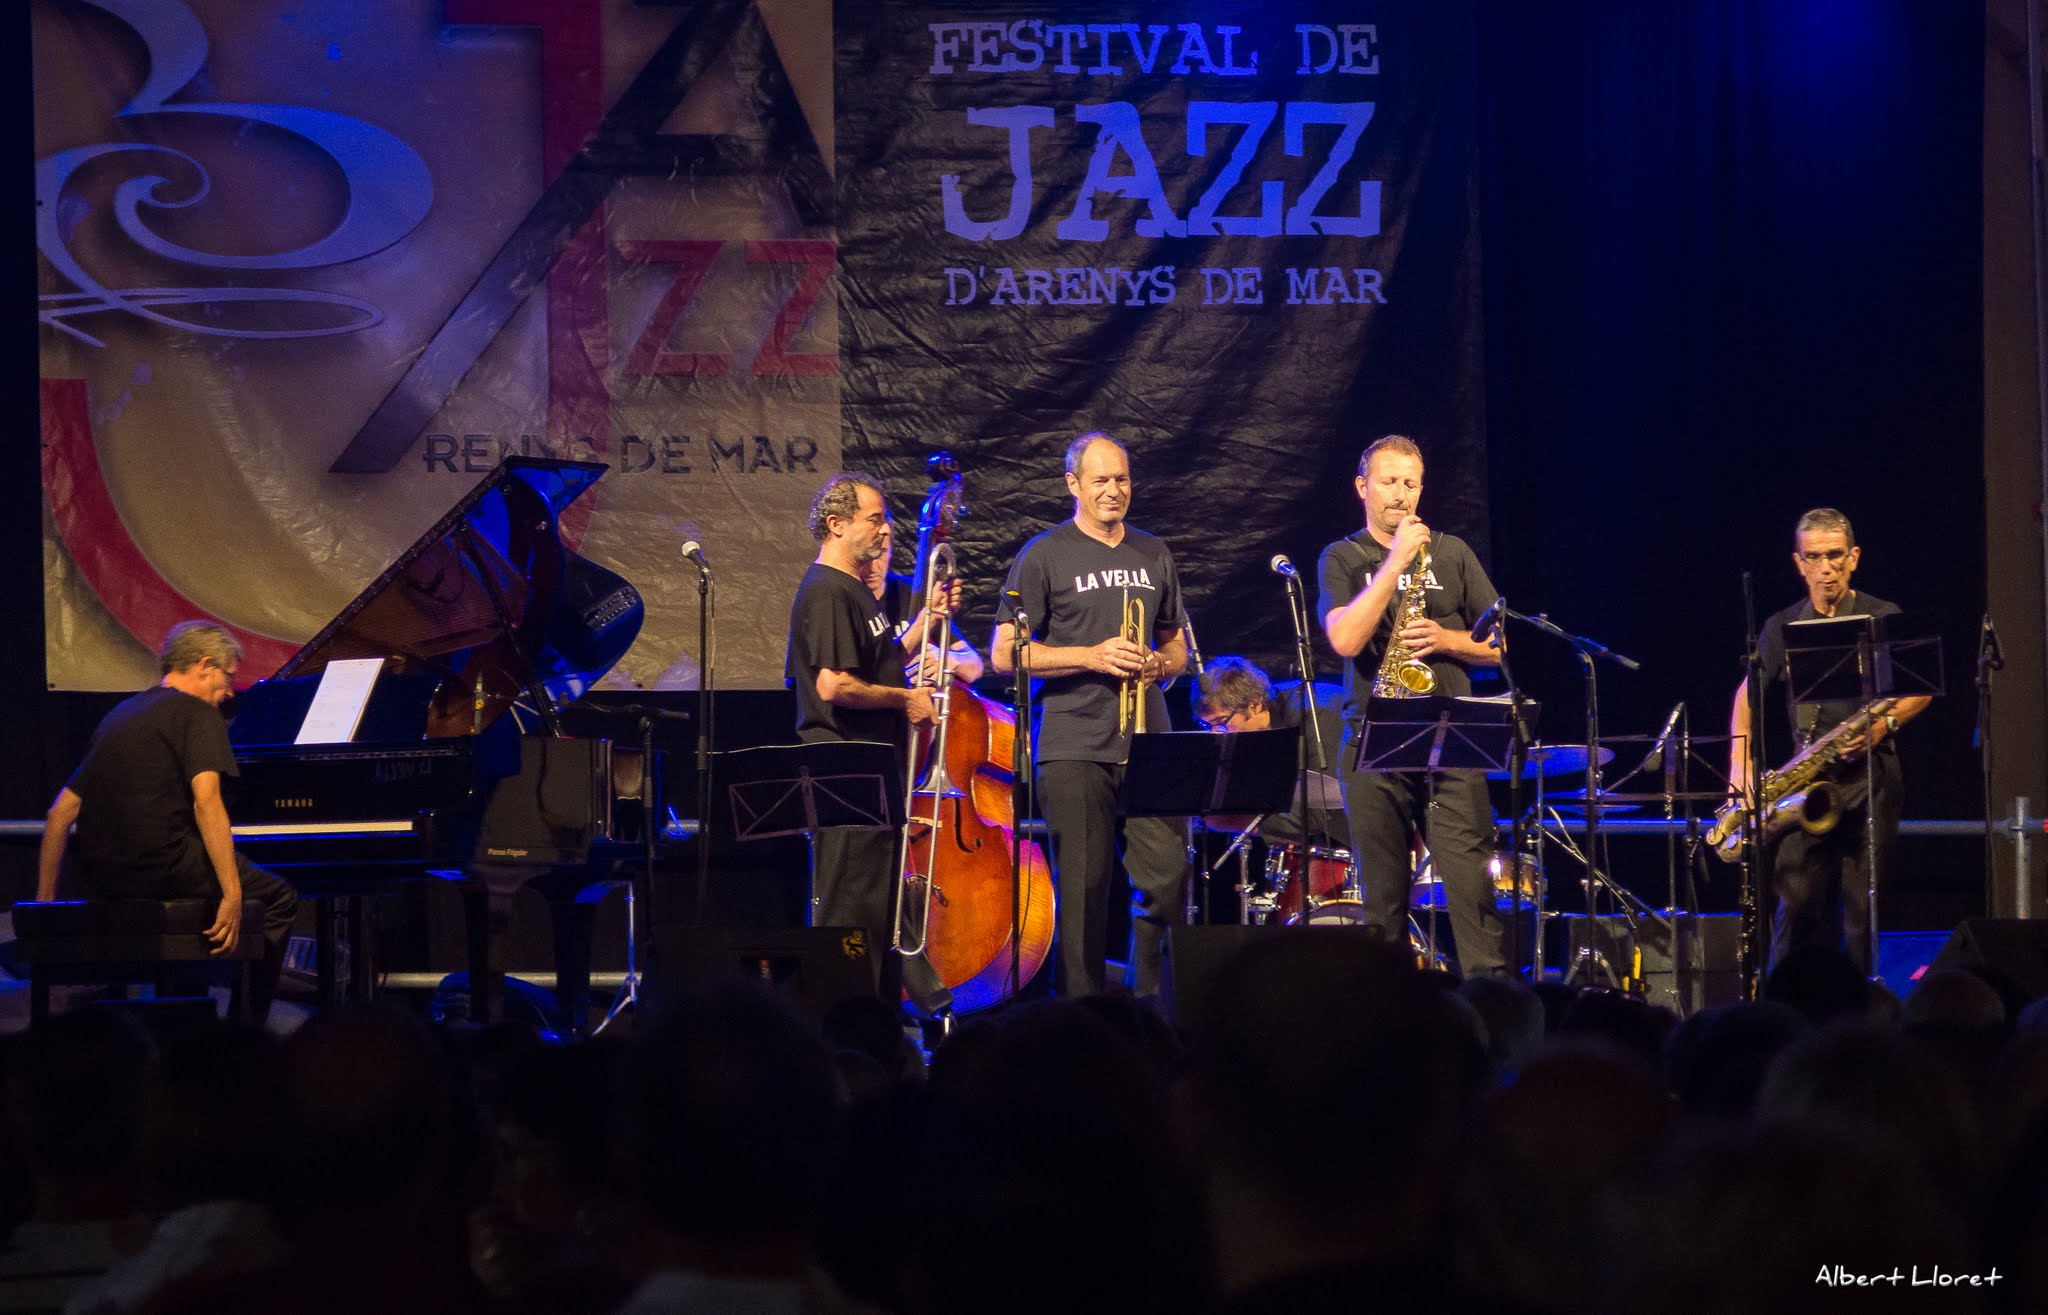 Imatges del 25 Festival de Jazz d'Arenys de Mar - 2016 - Foto 31199428